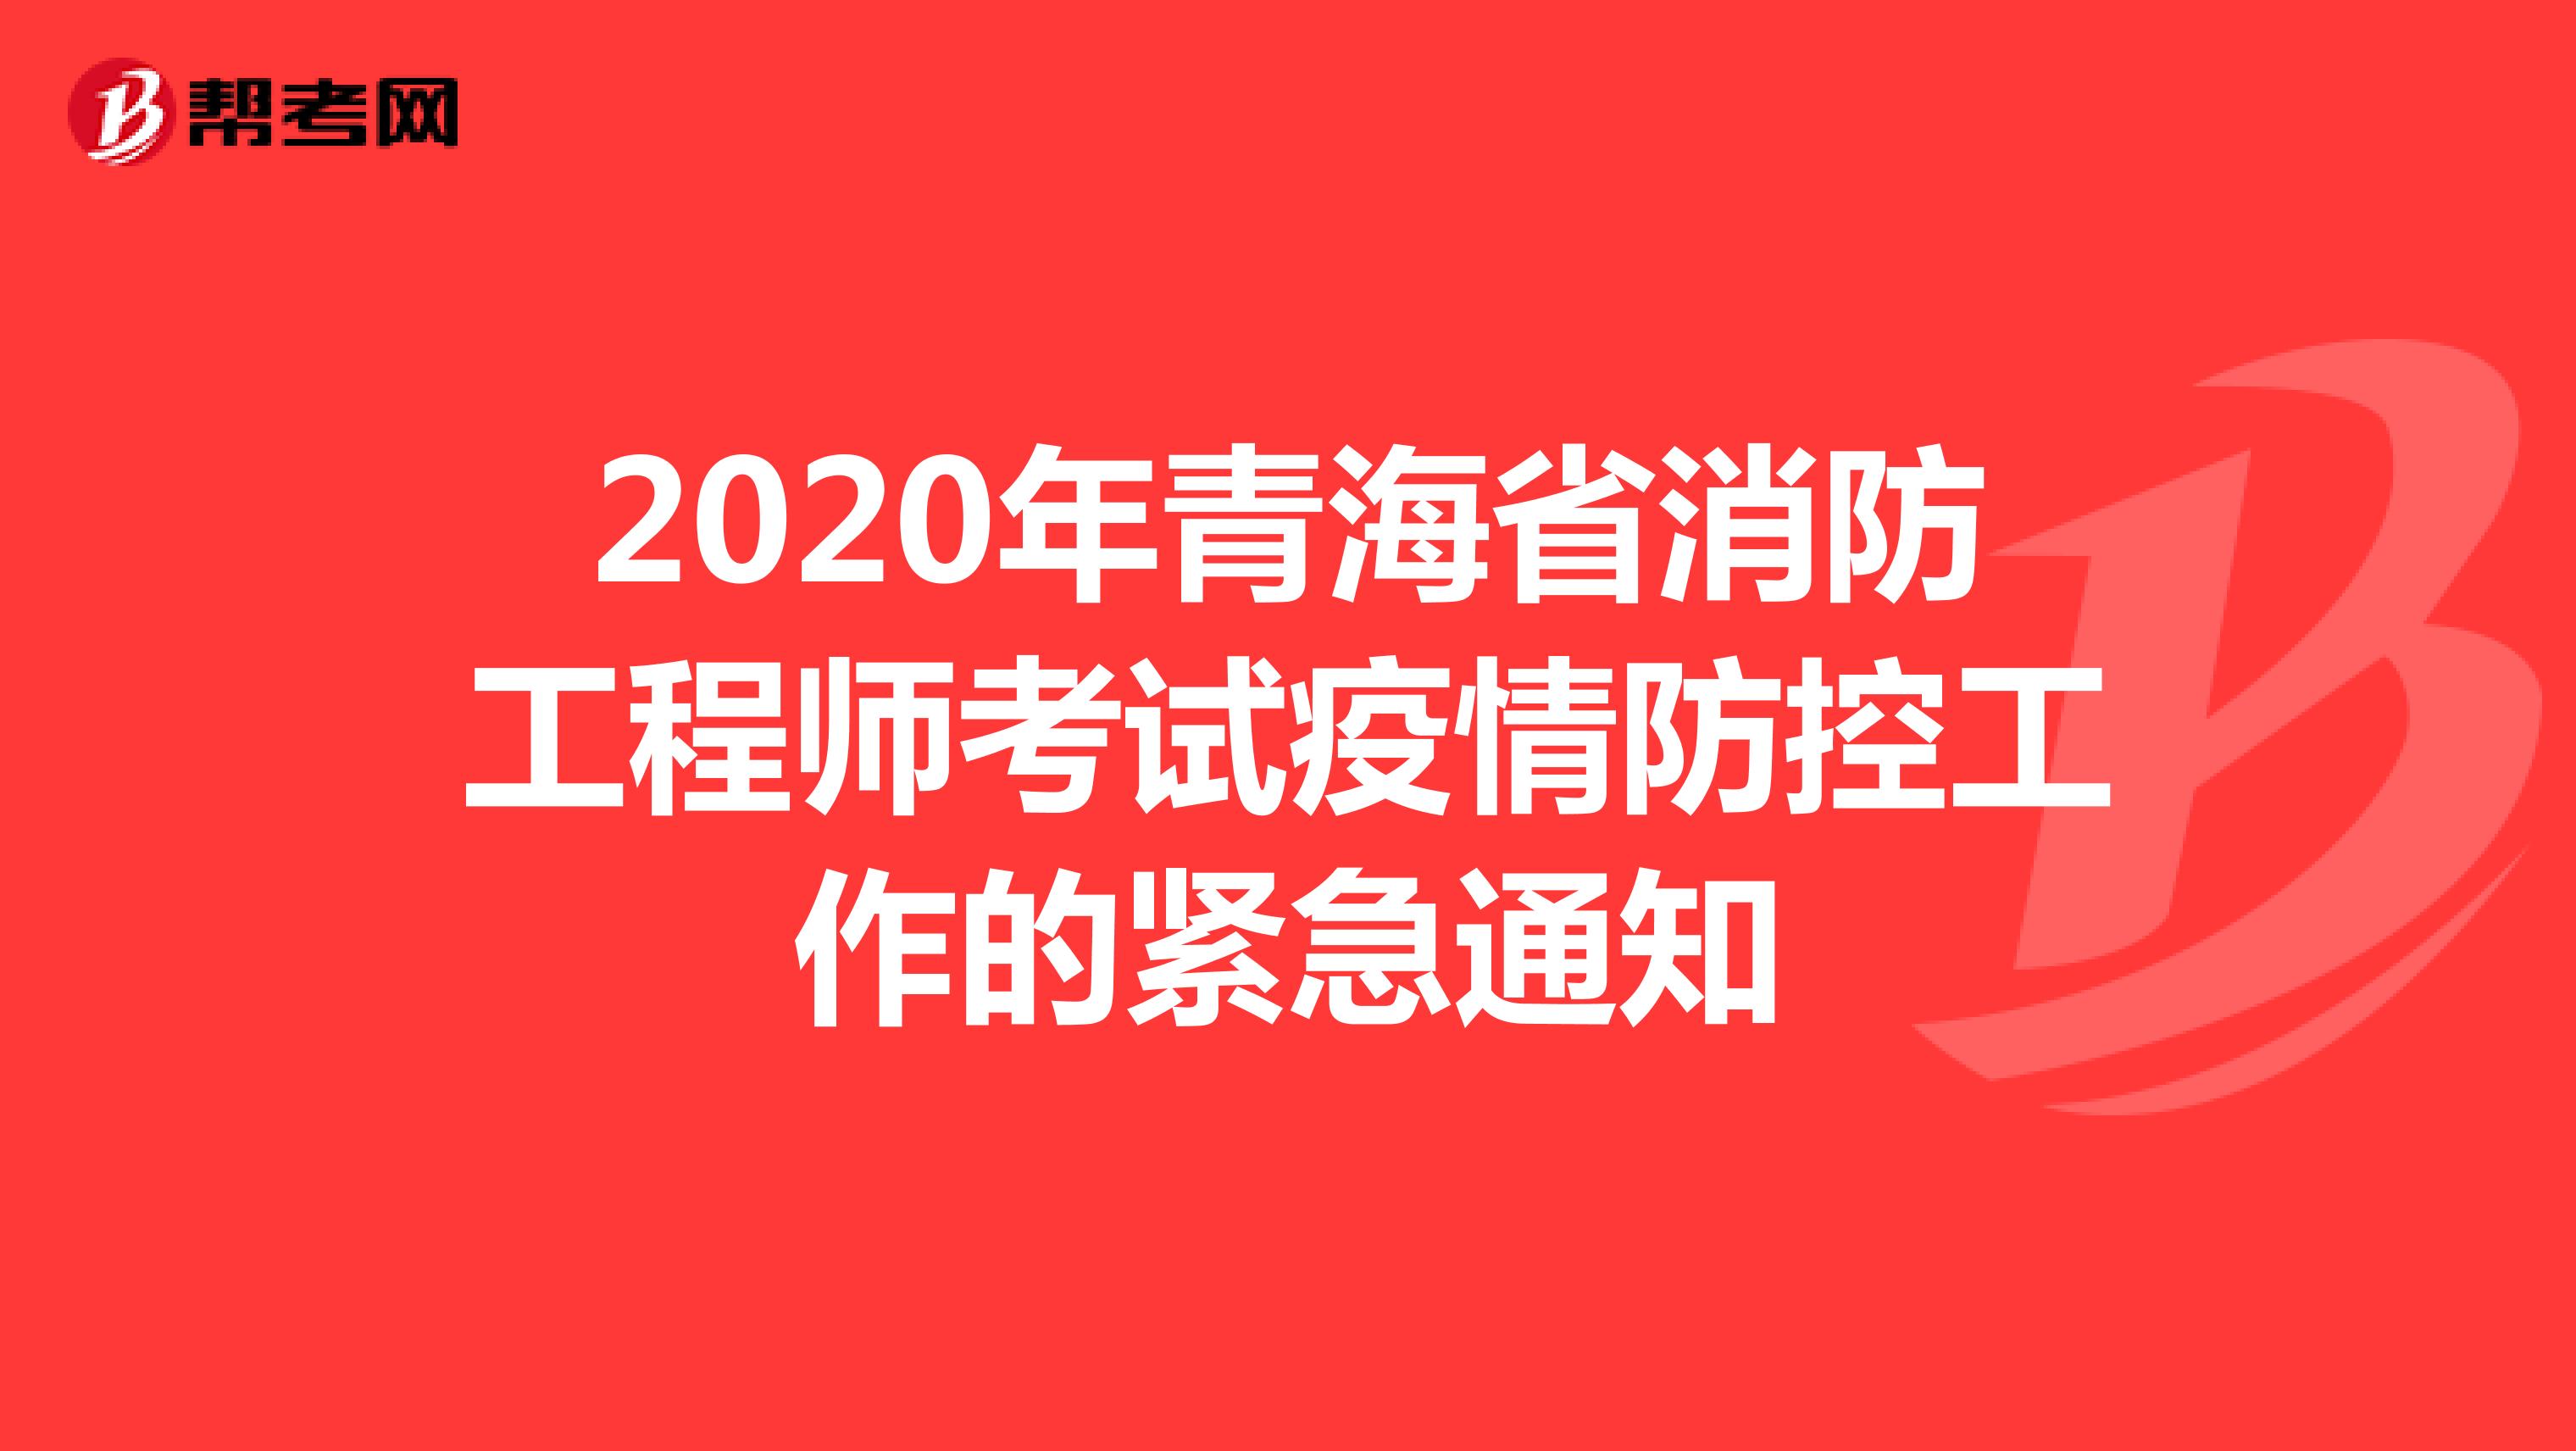 2020年青海省消防工程师考试疫情防控工作的紧急通知